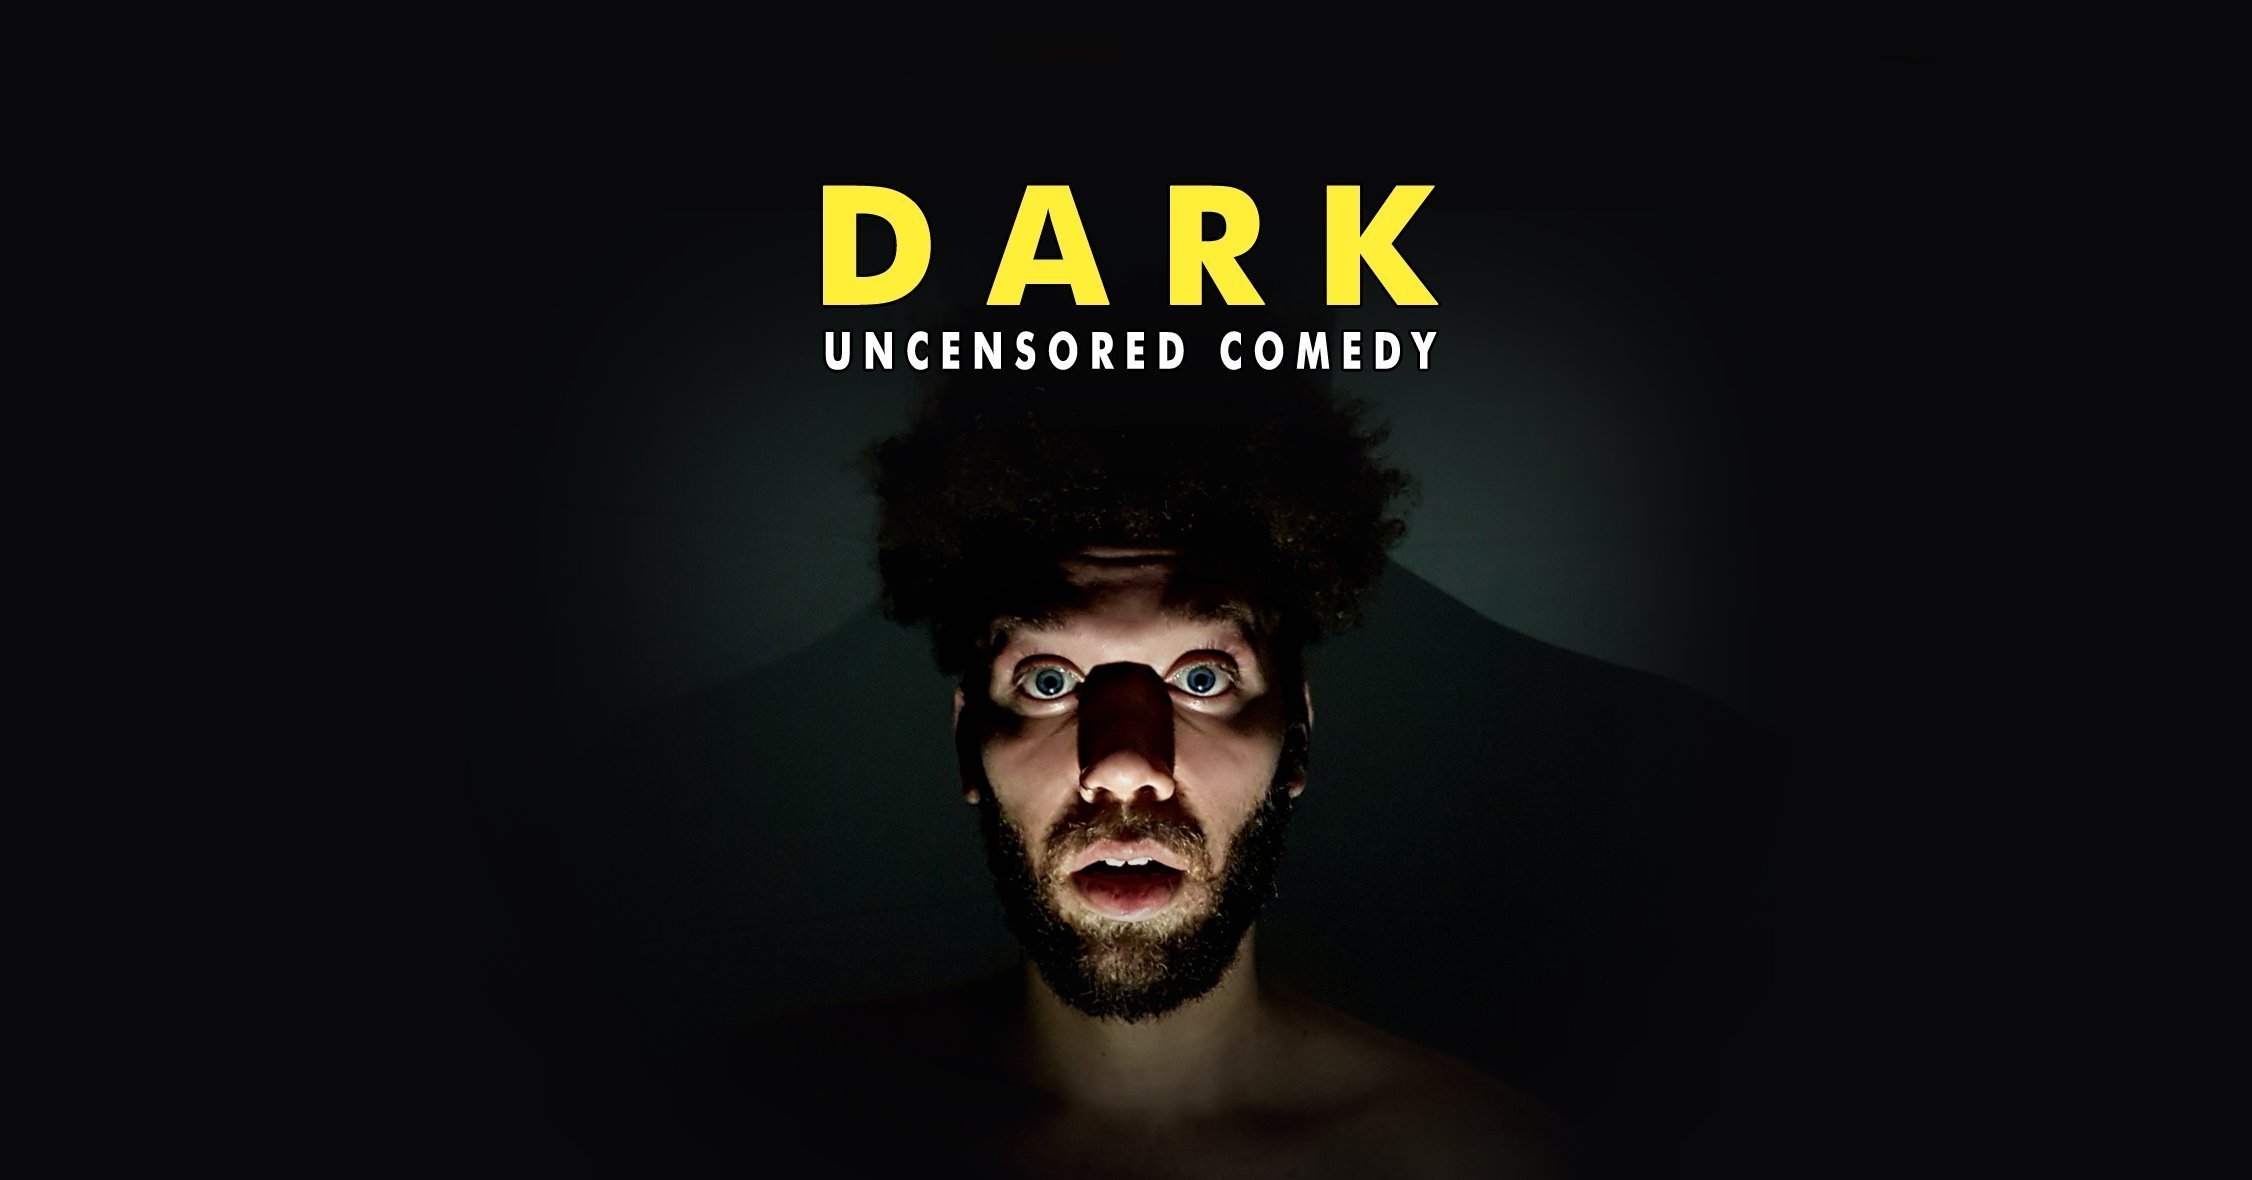 DARK Uncensored Comedy